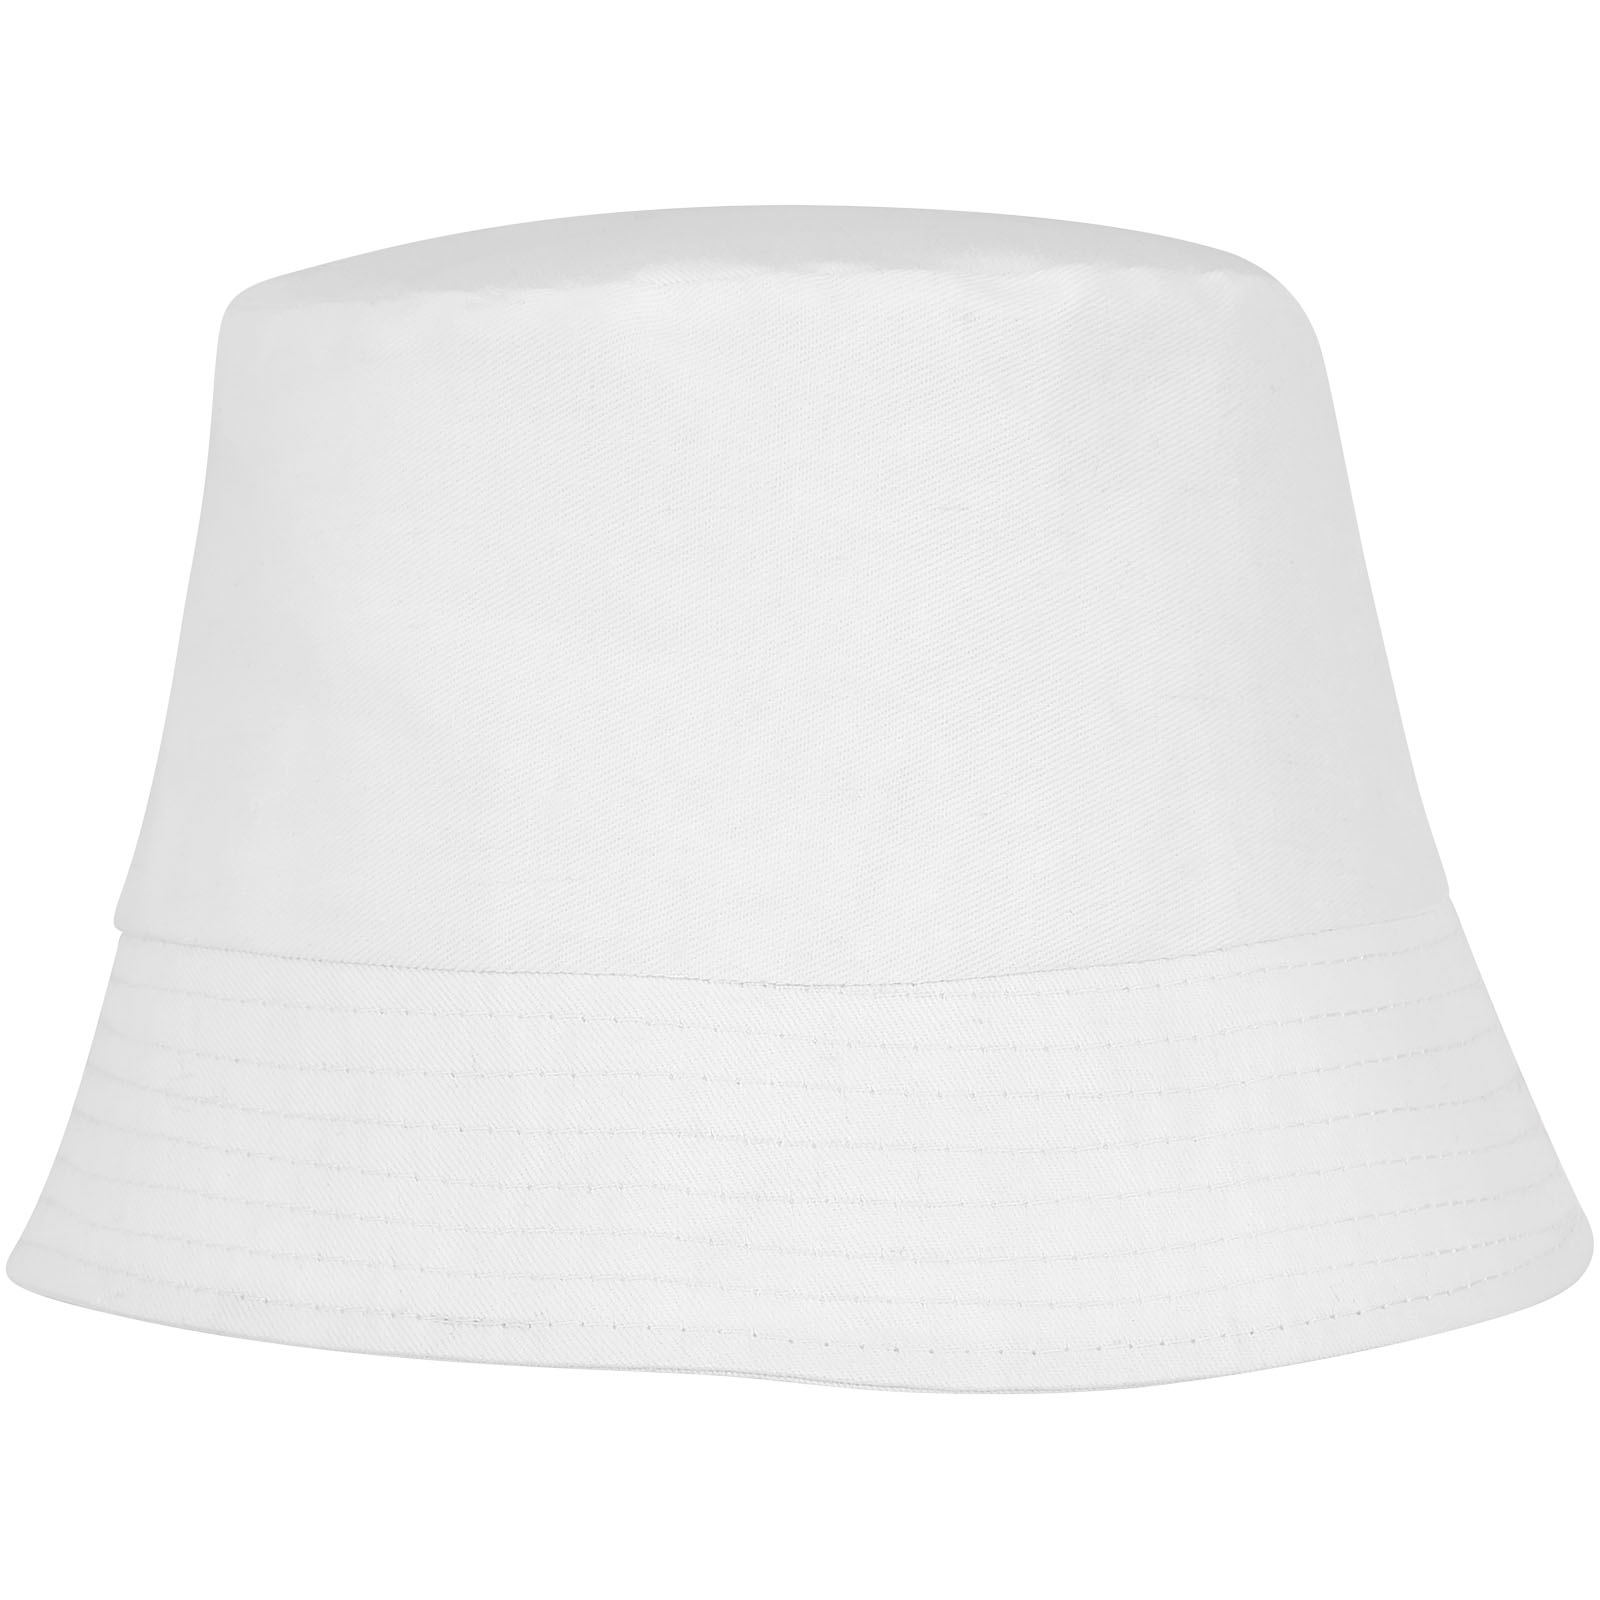 Advertising Caps & Hats - Solaris sun hat - 0